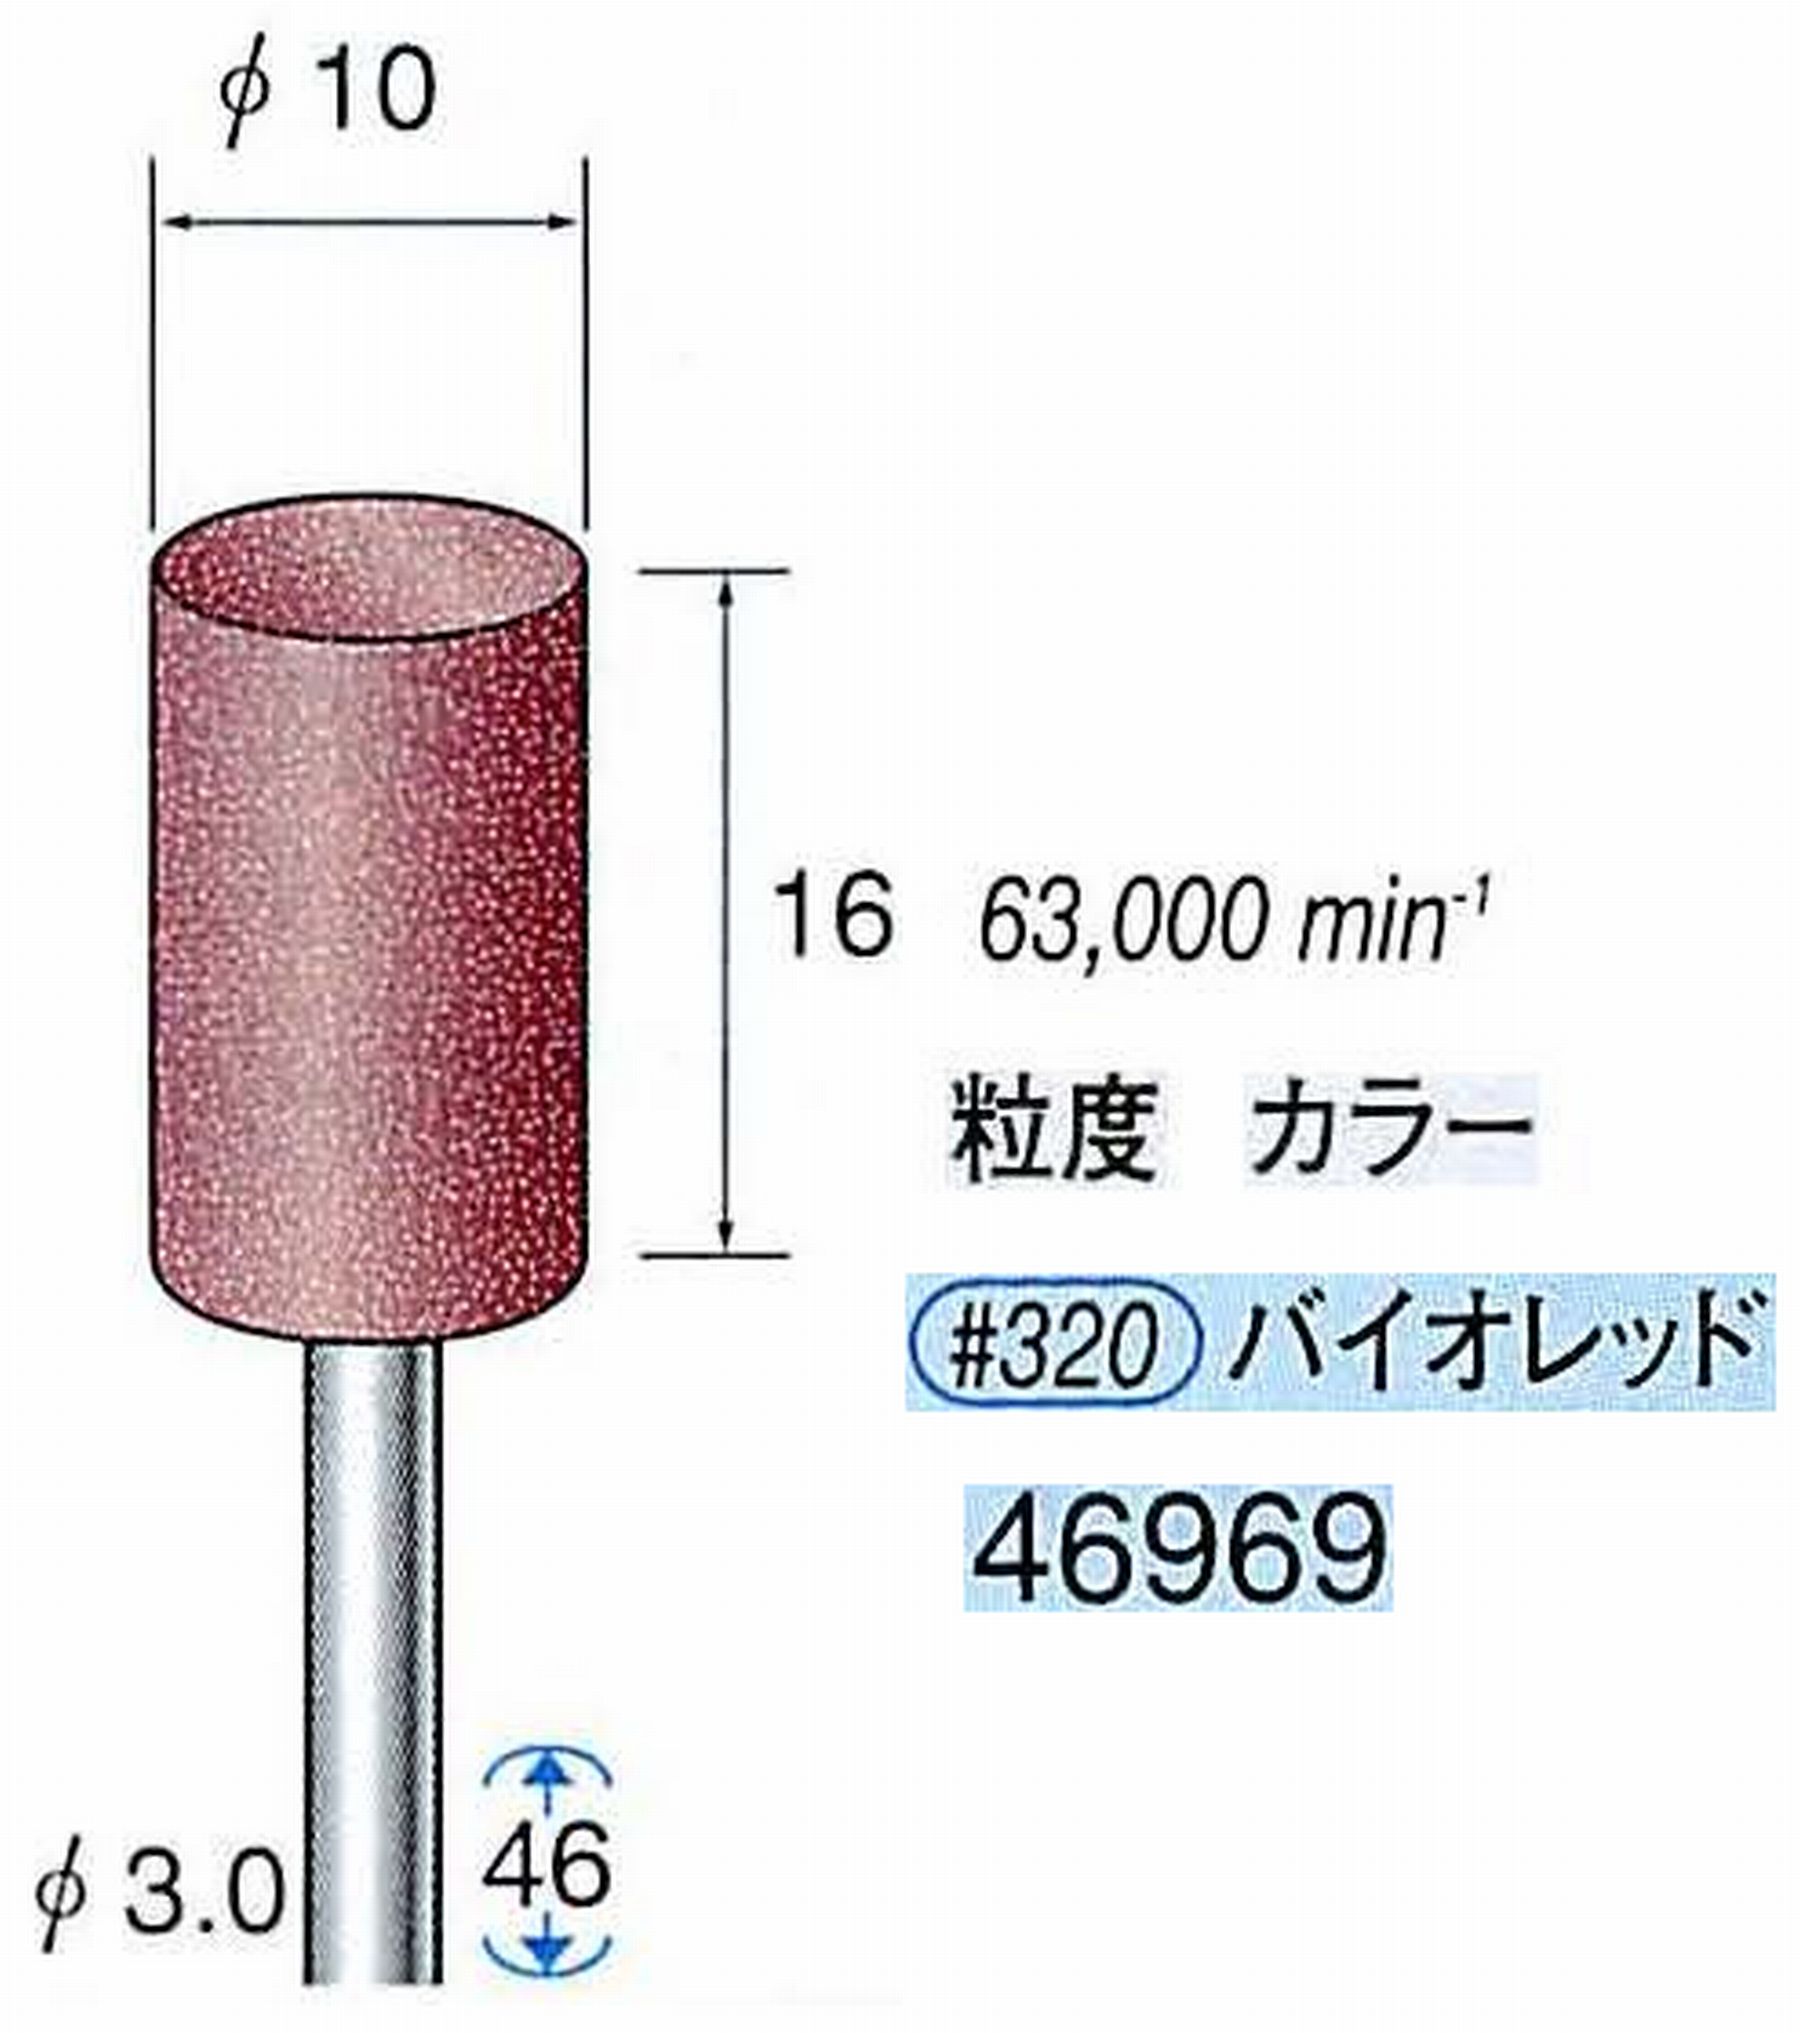 ナカニシ/NAKANISHI 高速回転用スペシャルゴム砥石(WA砥粒)ゴム質の硬さ：ミディアム 軸径(シャンク) φ3.0mm 46969